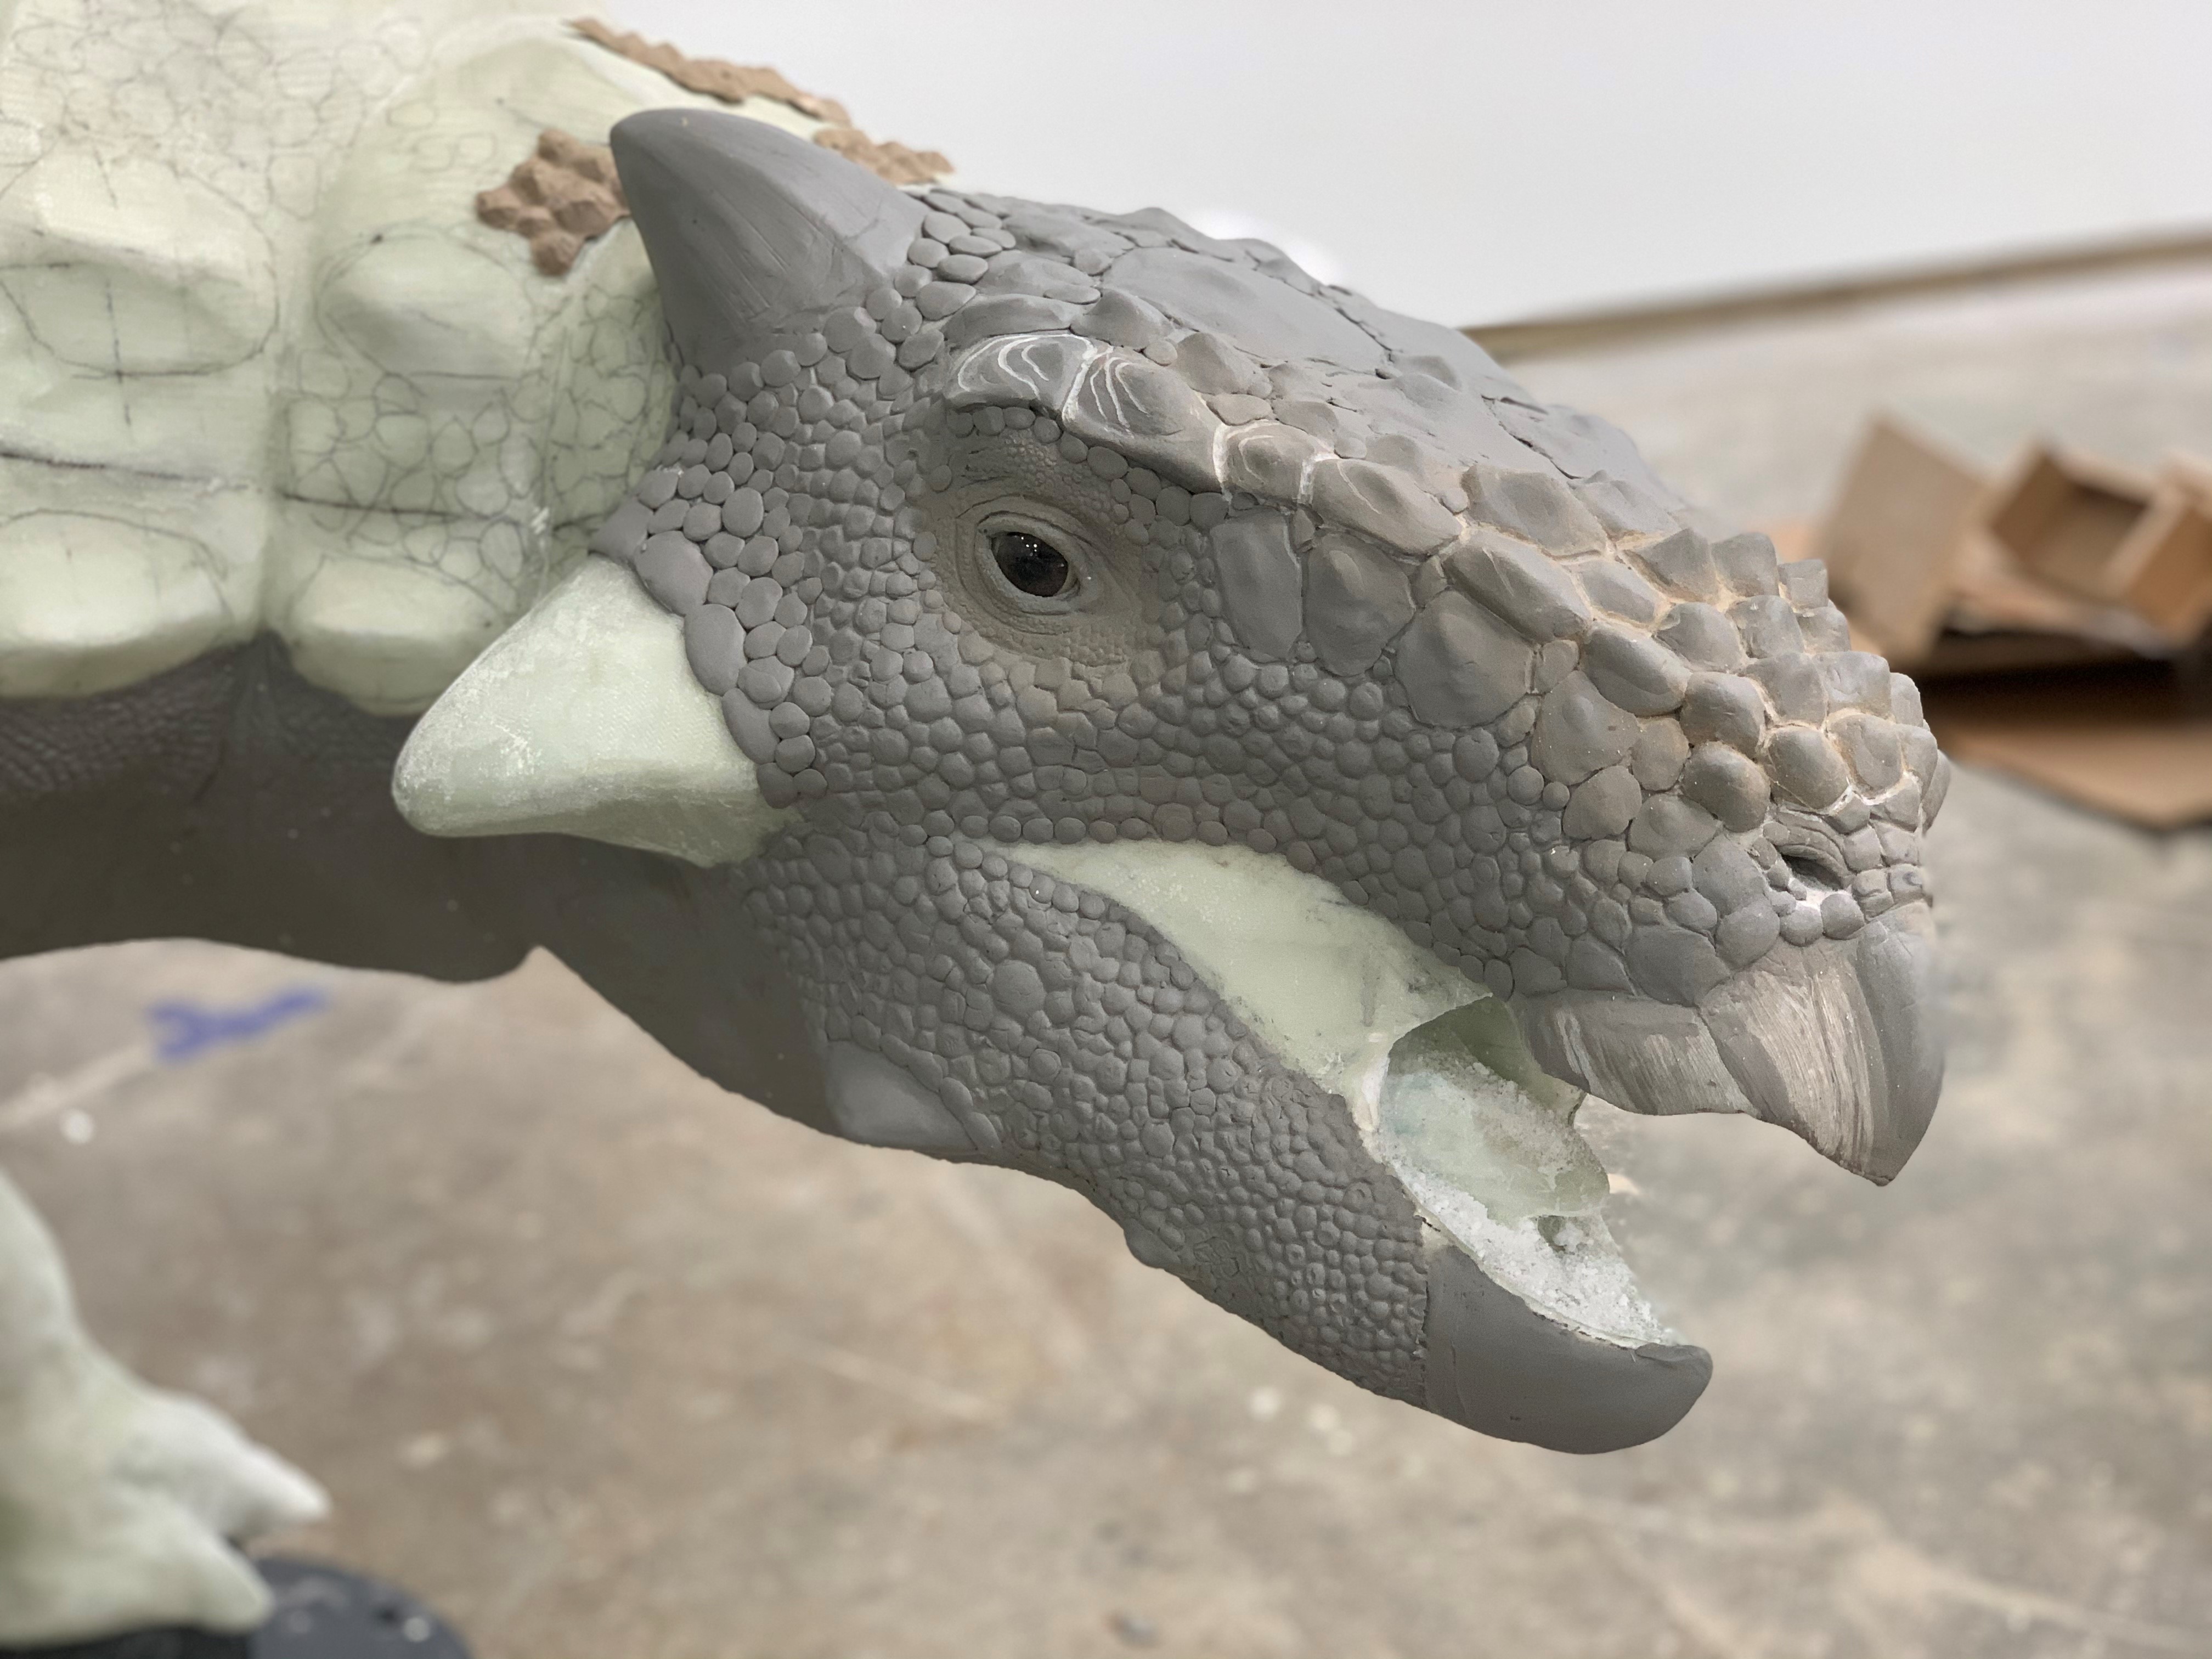 An in-progress dinosaur sculpture